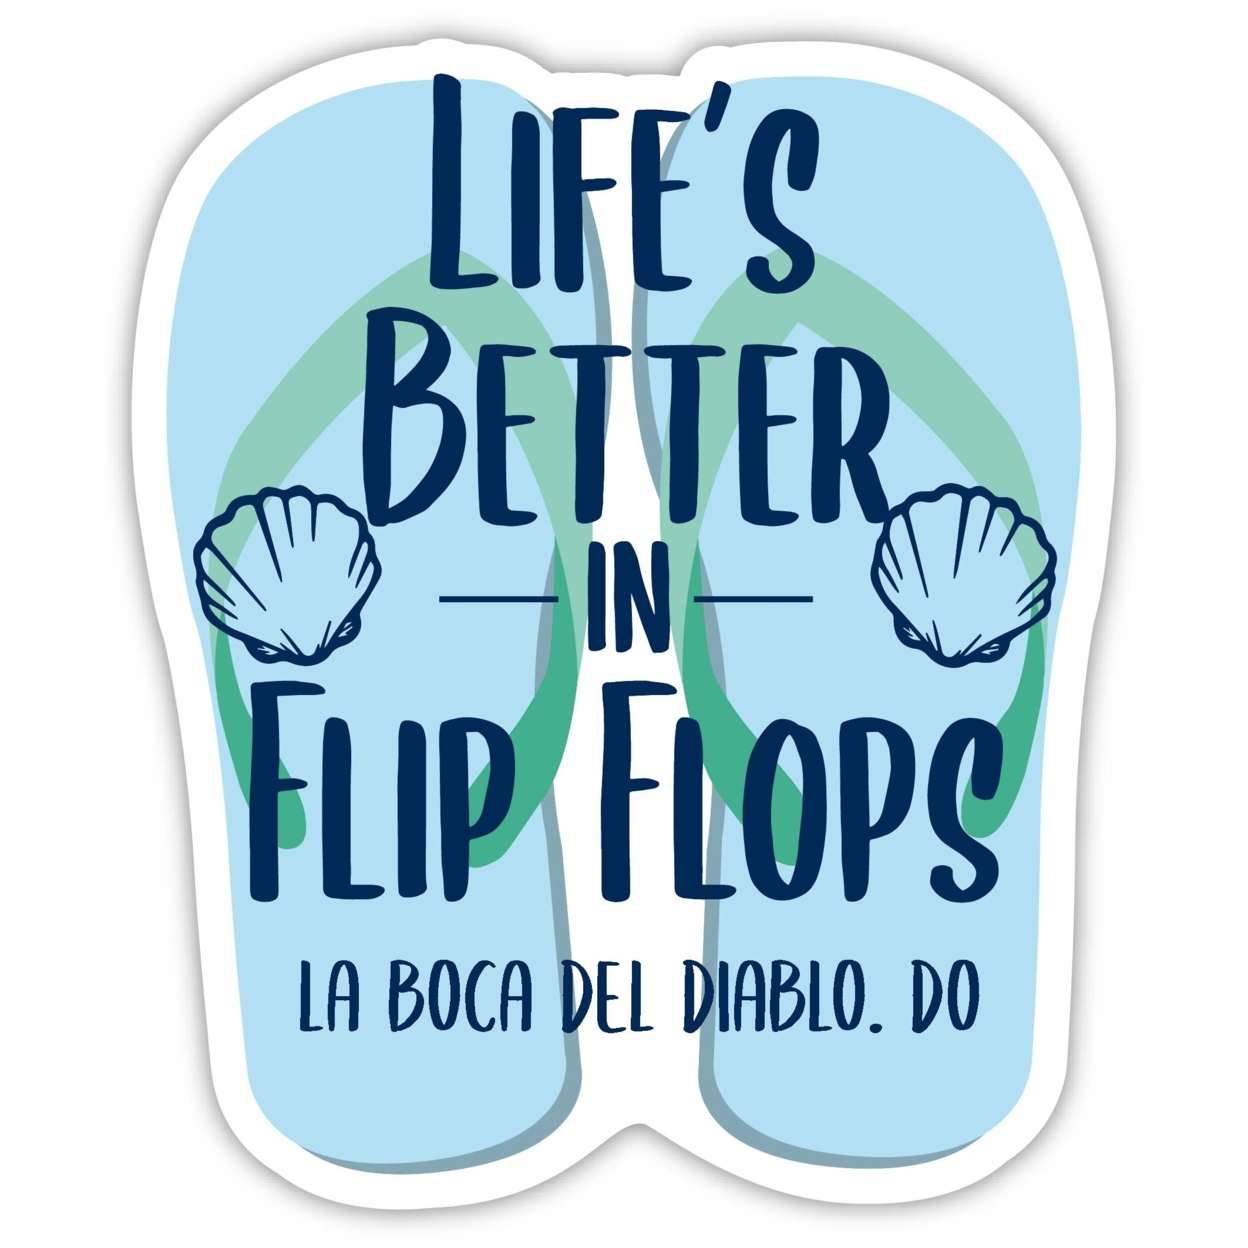 La Boca Del Diablo Dominican Republic Souvenir 4 Inch Vinyl Decal Sticker Flip Flop Design